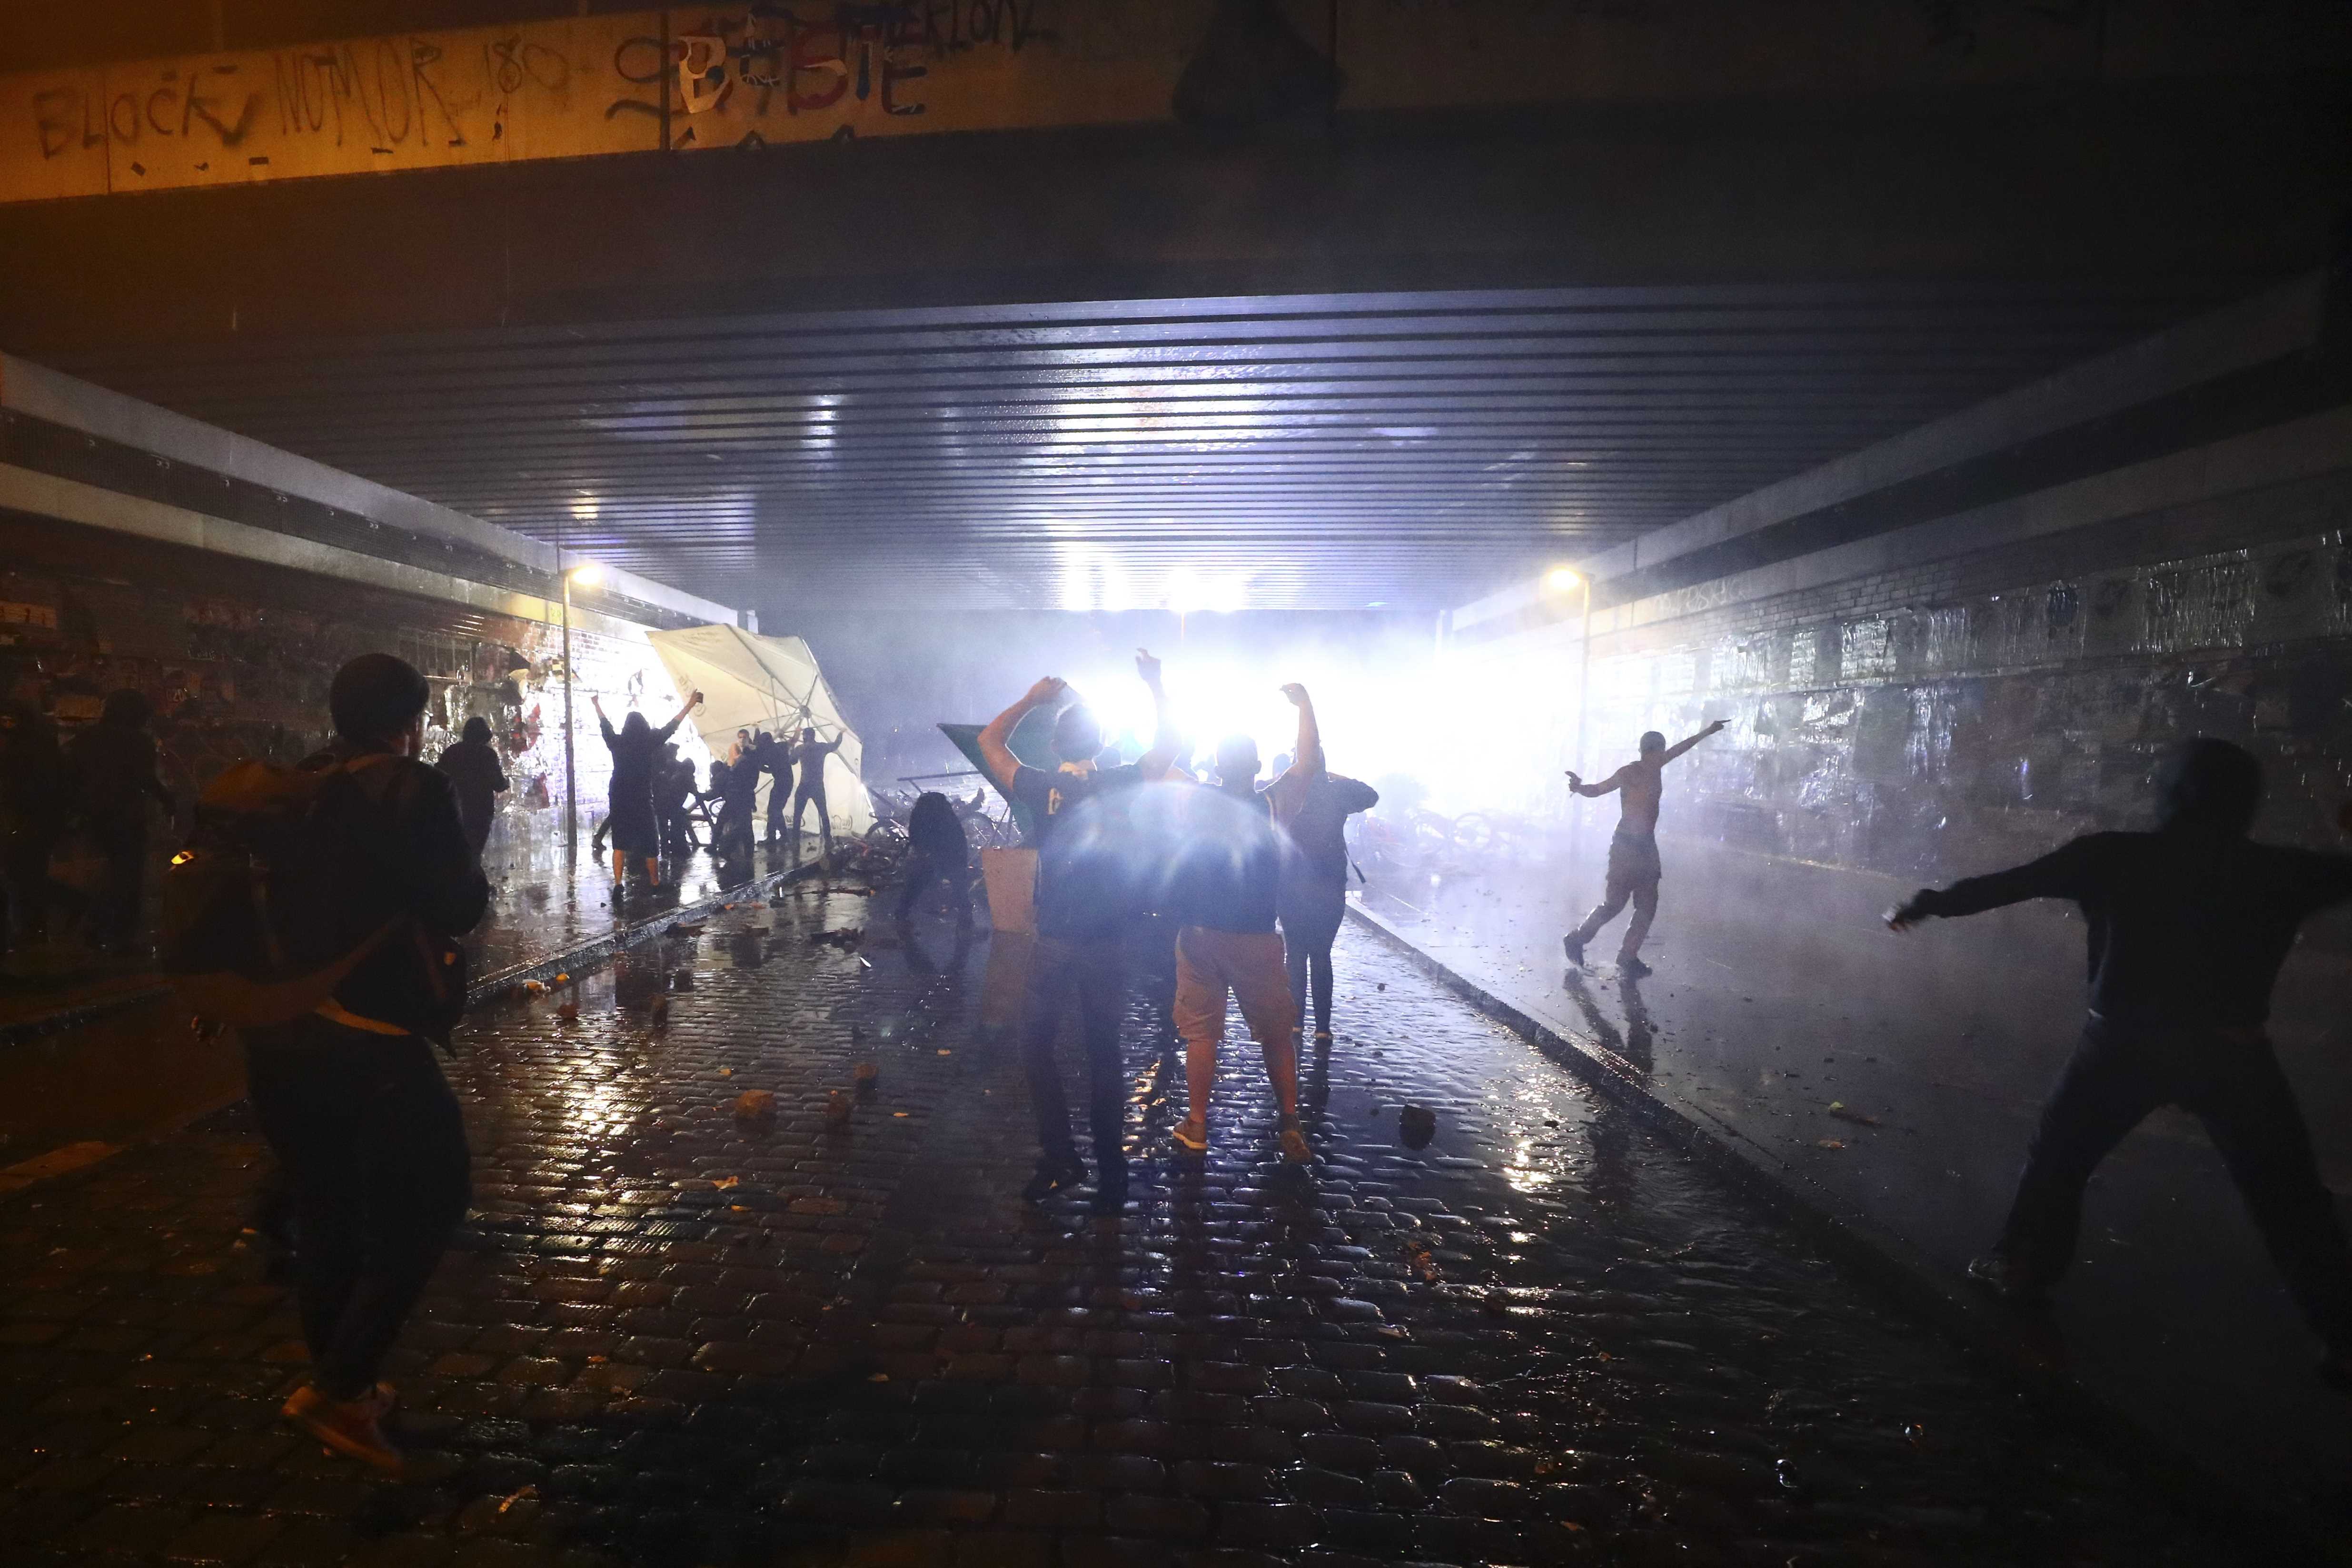 اشتباكات بين المتظاهرين وقوات الأمن بأحد أنفاق مدينة هامبورج